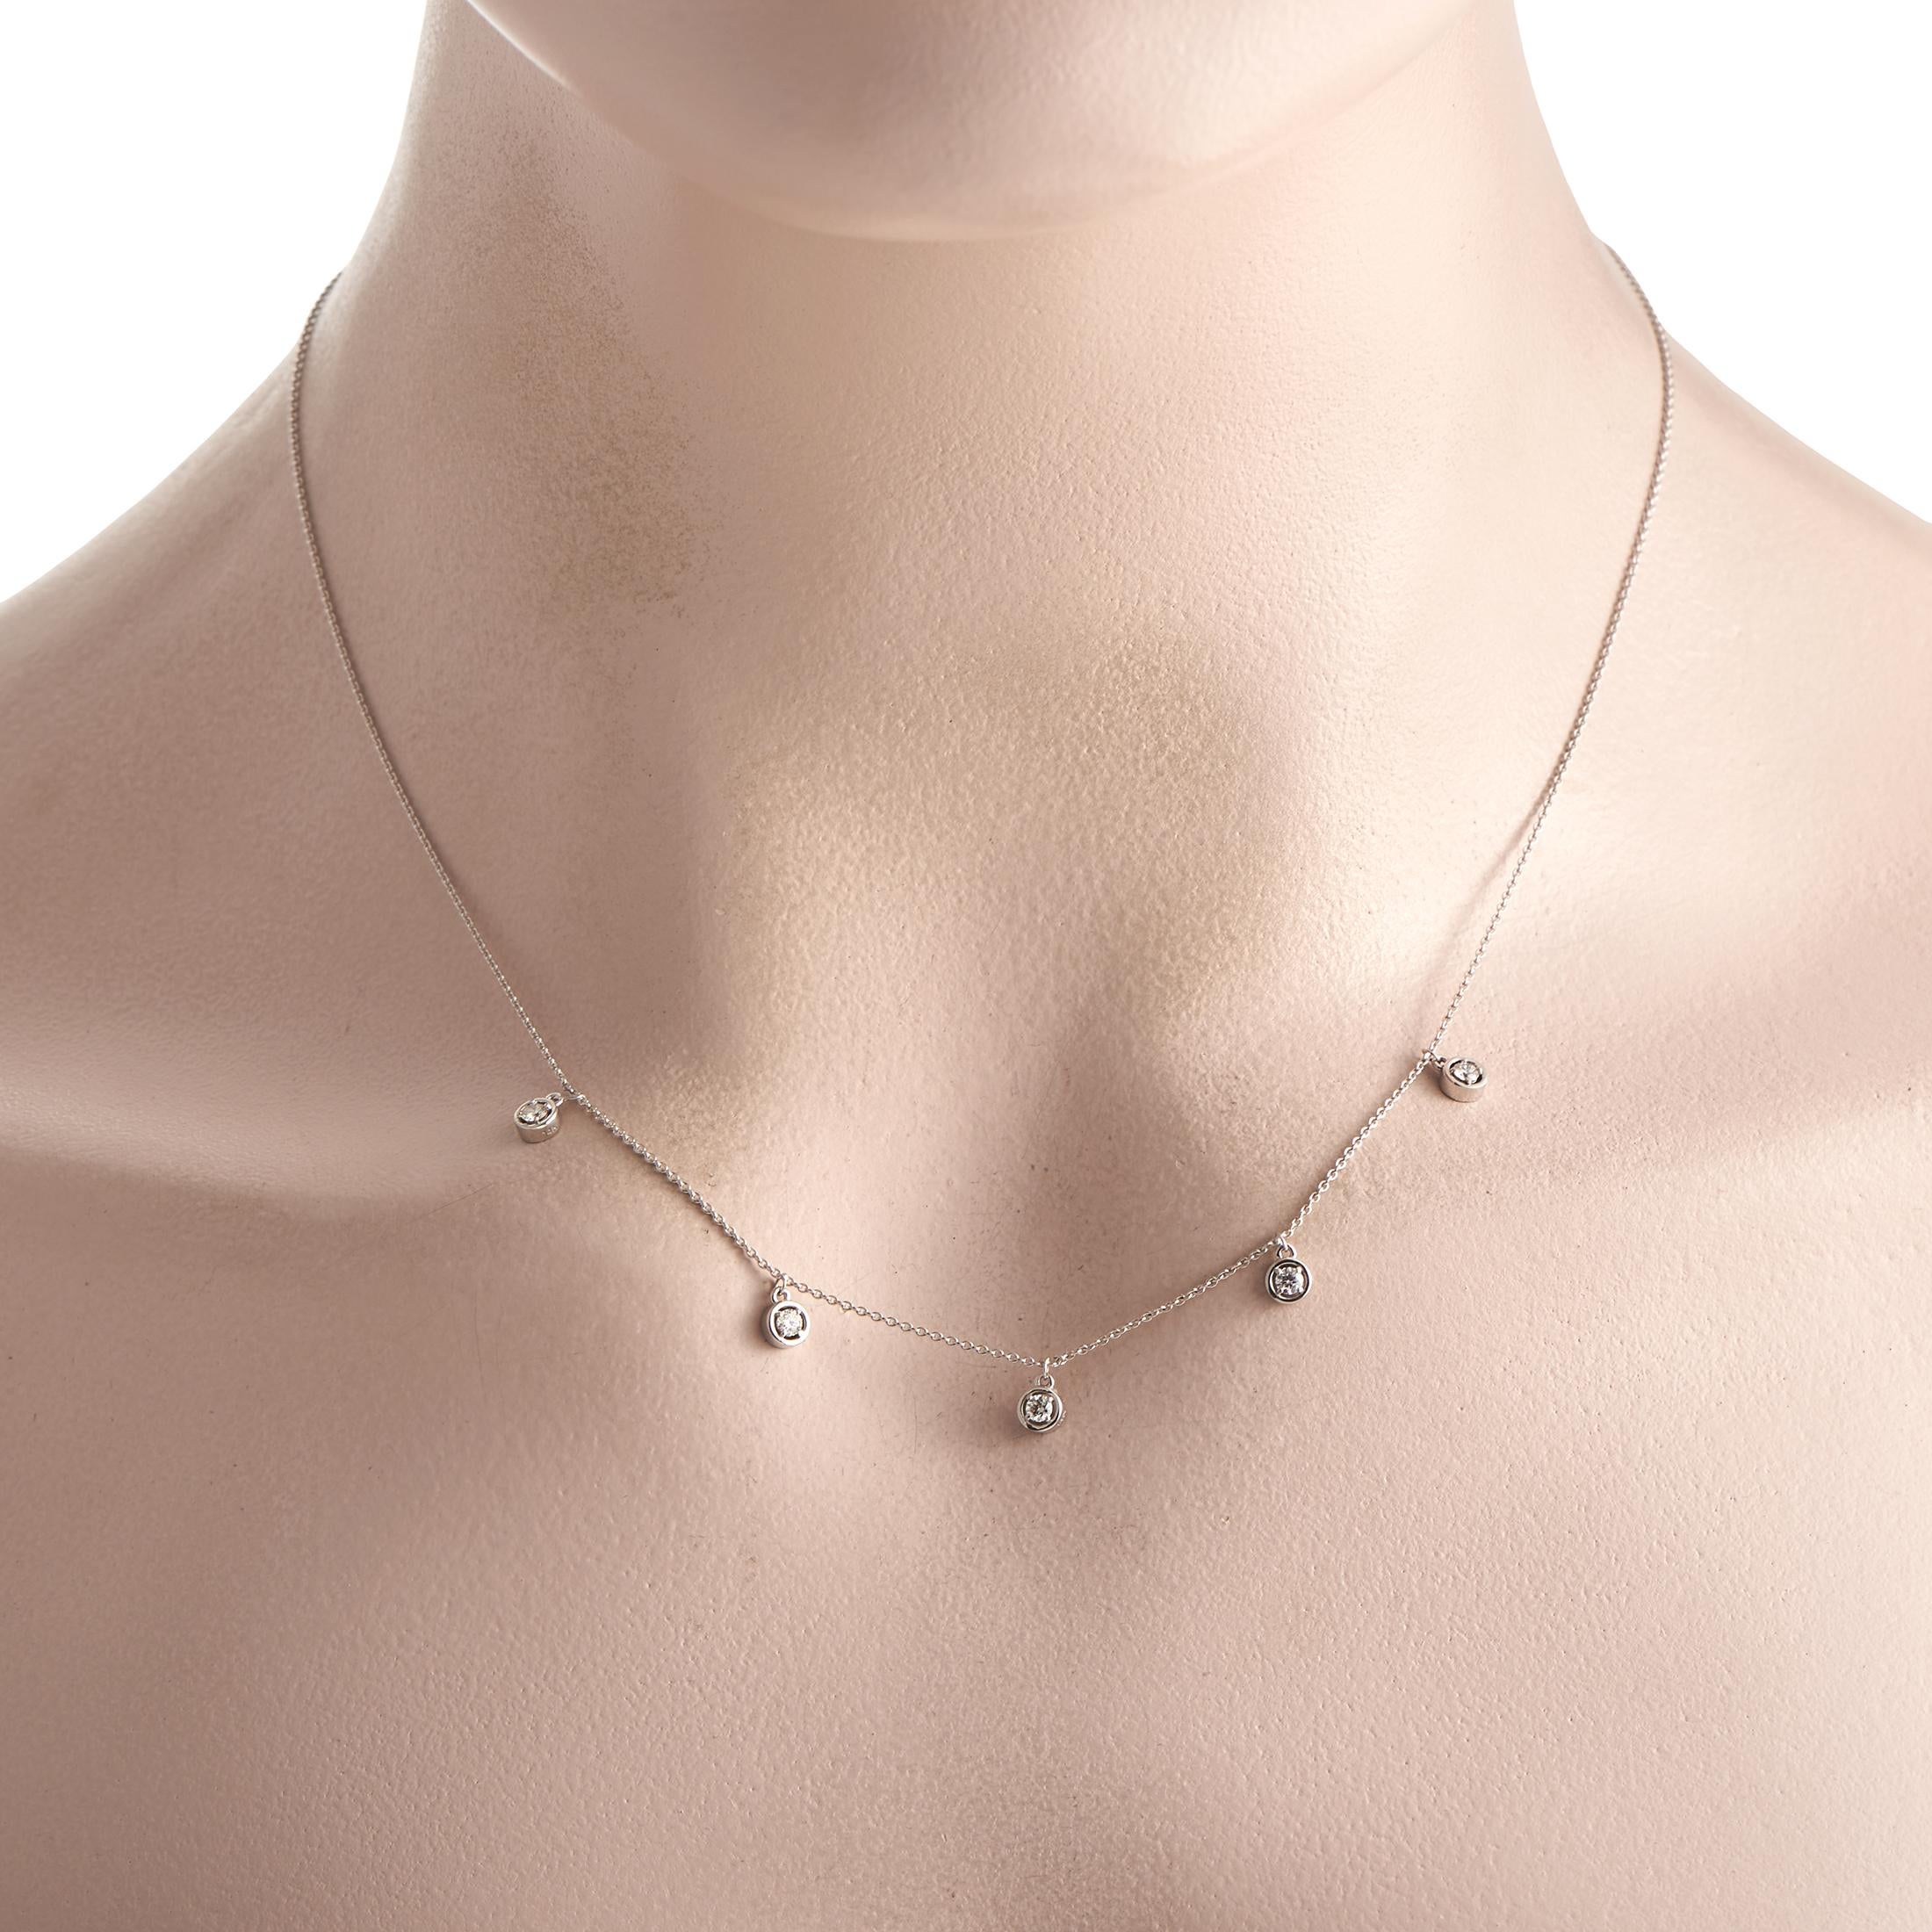 Ce collier à station de diamants peut donner un coup de pouce instantané à n'importe quelle tenue. Son profil minimaliste et son éclat discret lui permettent de s'adapter à une tenue décontractée, de travail, de soirée ou de cérémonie. Le collier